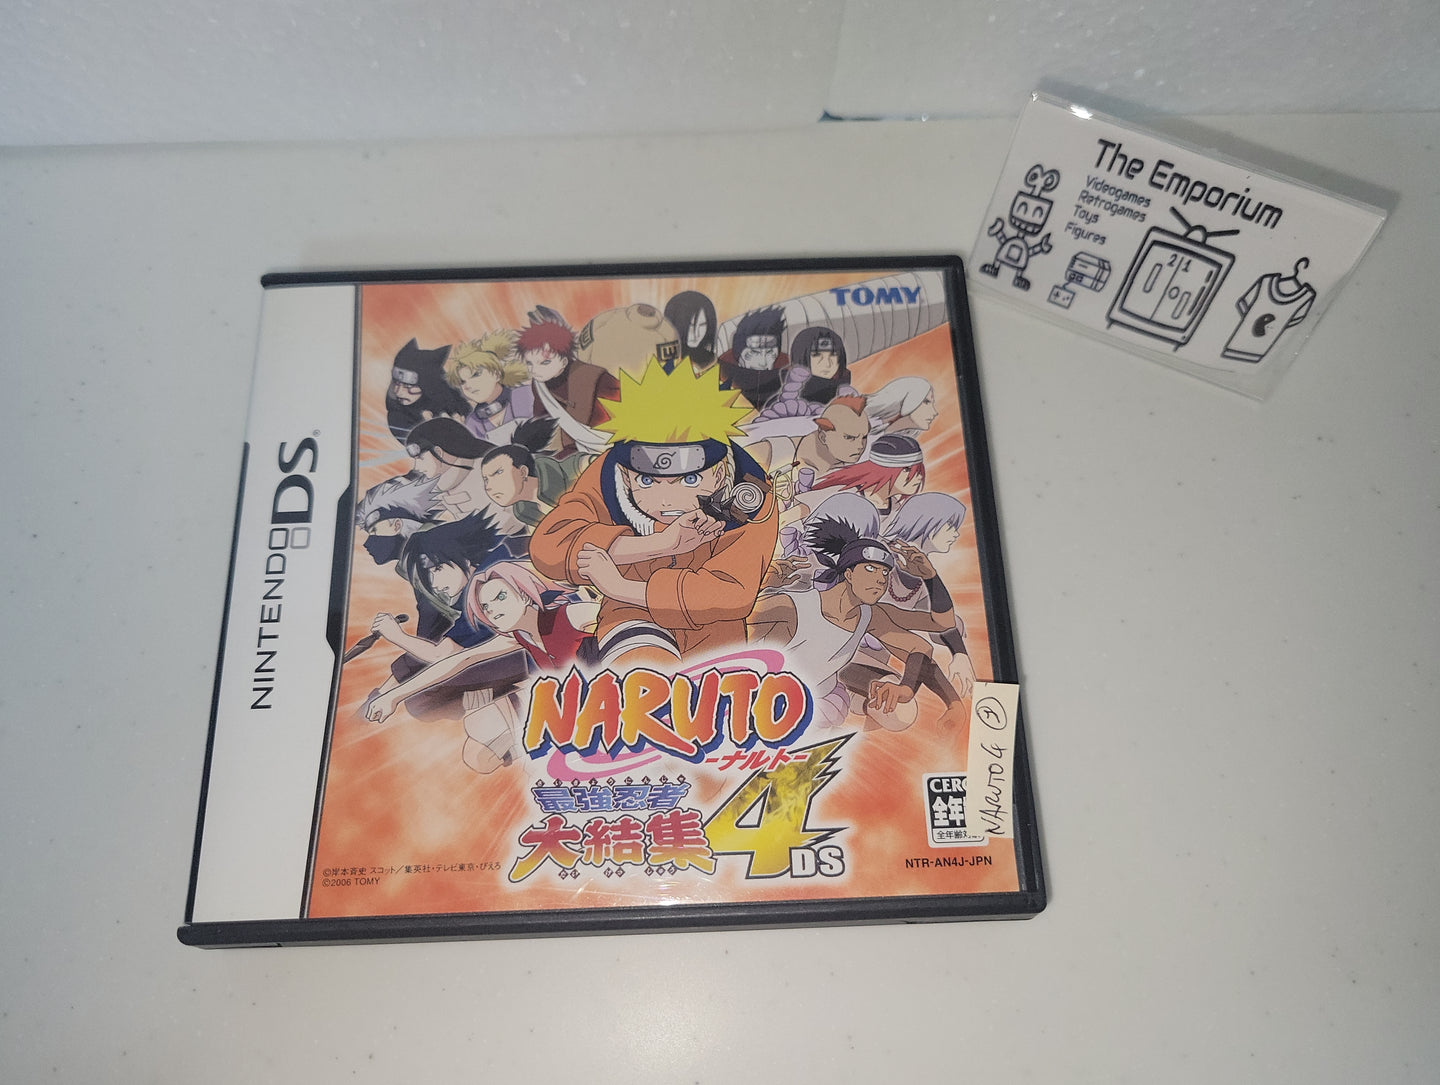 Naruto: Saikyo Ninja Daikesshu 4 - Nintendo Ds NDS